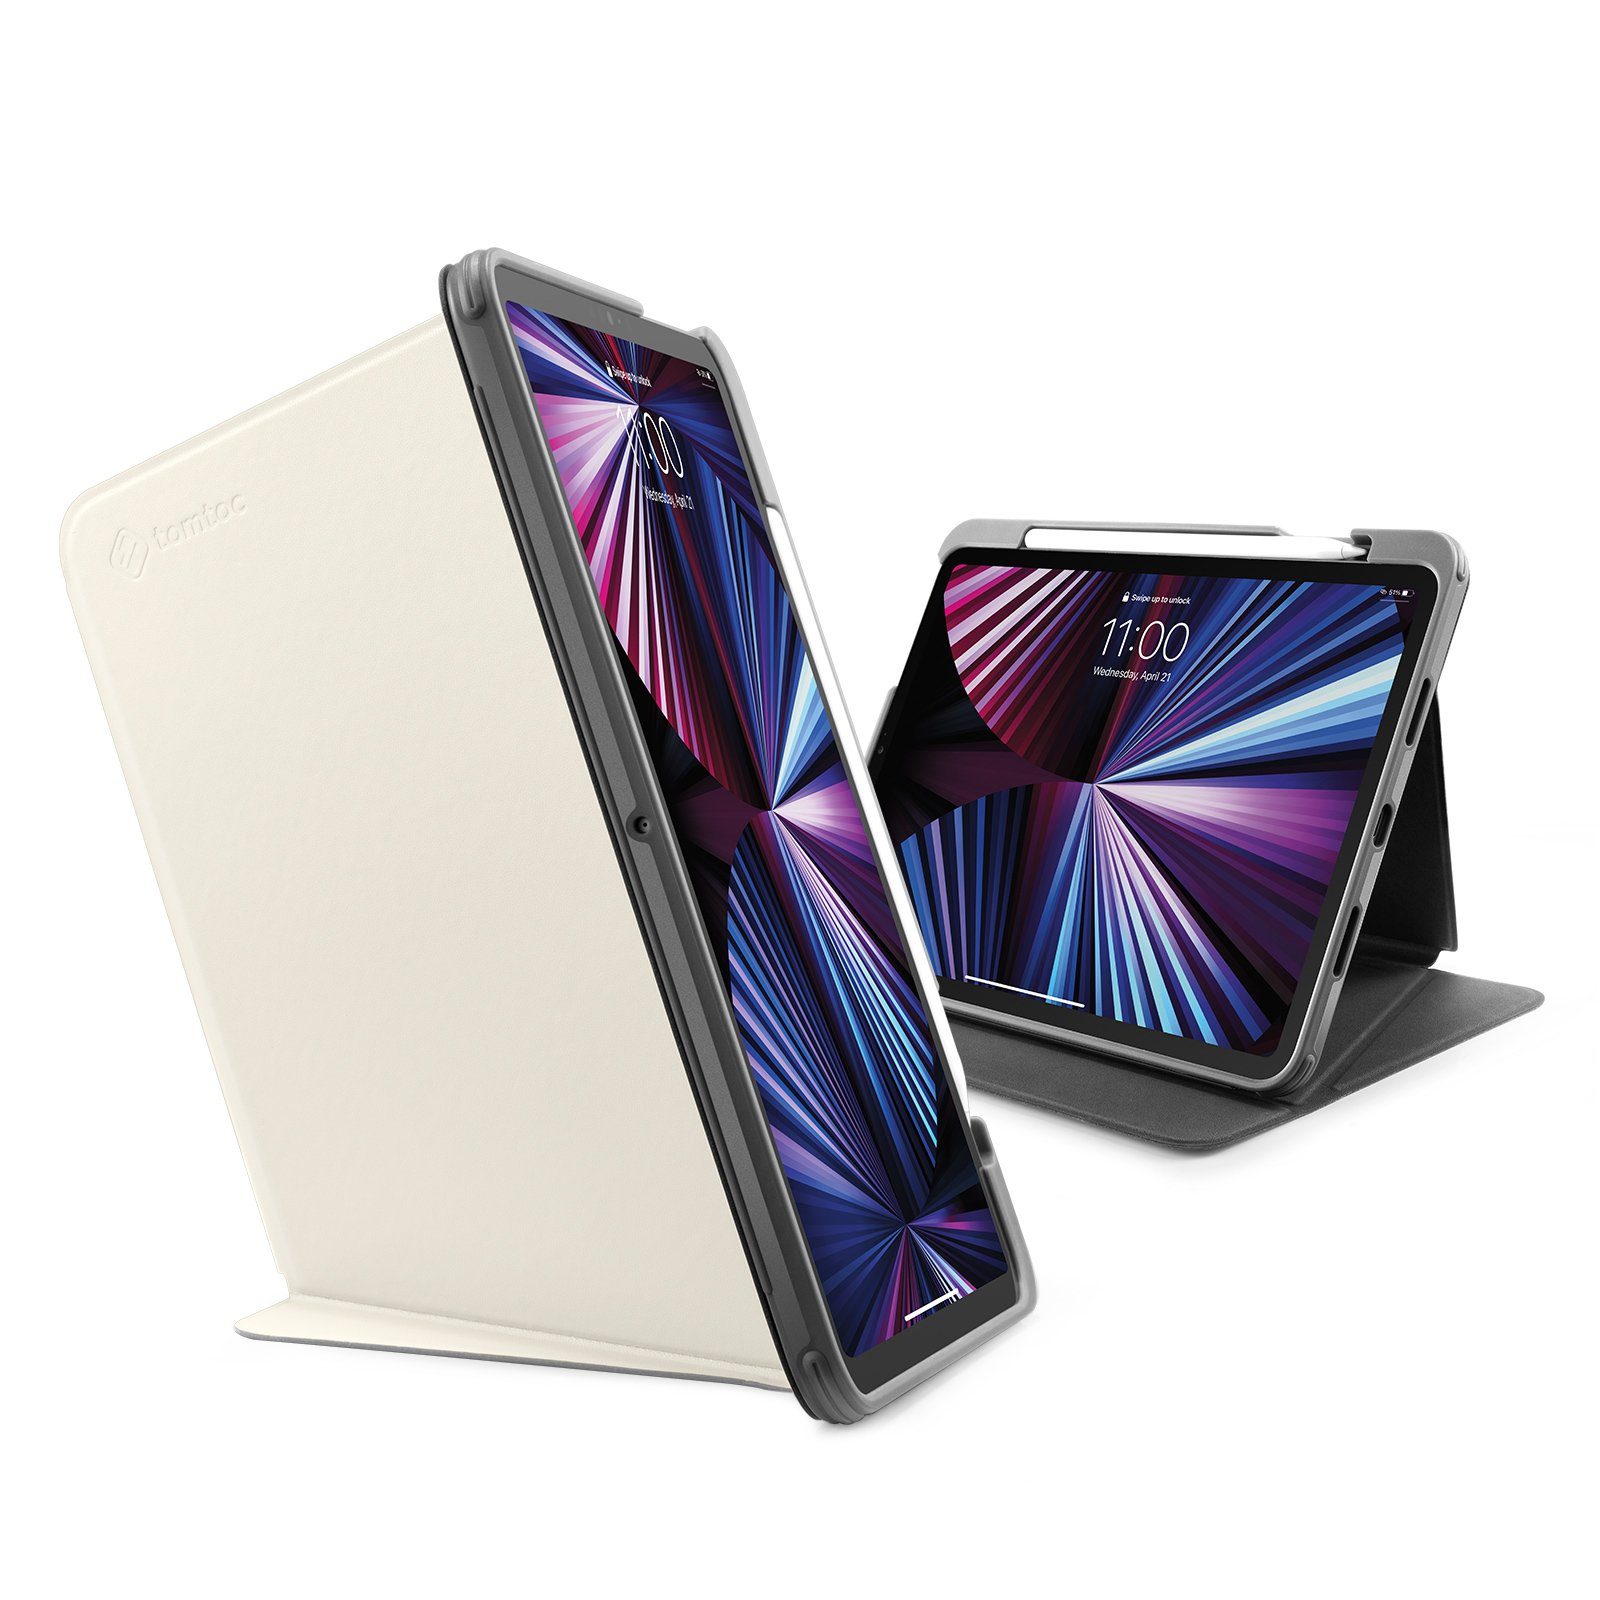 tomtoc Tablet-Hülle 11 Zoll iPad Pro (3. Generation) Hülle, mit  Vertikal/Horizontal Standpositionen, Stifthalter, Auto Sleep/Wake Funktion